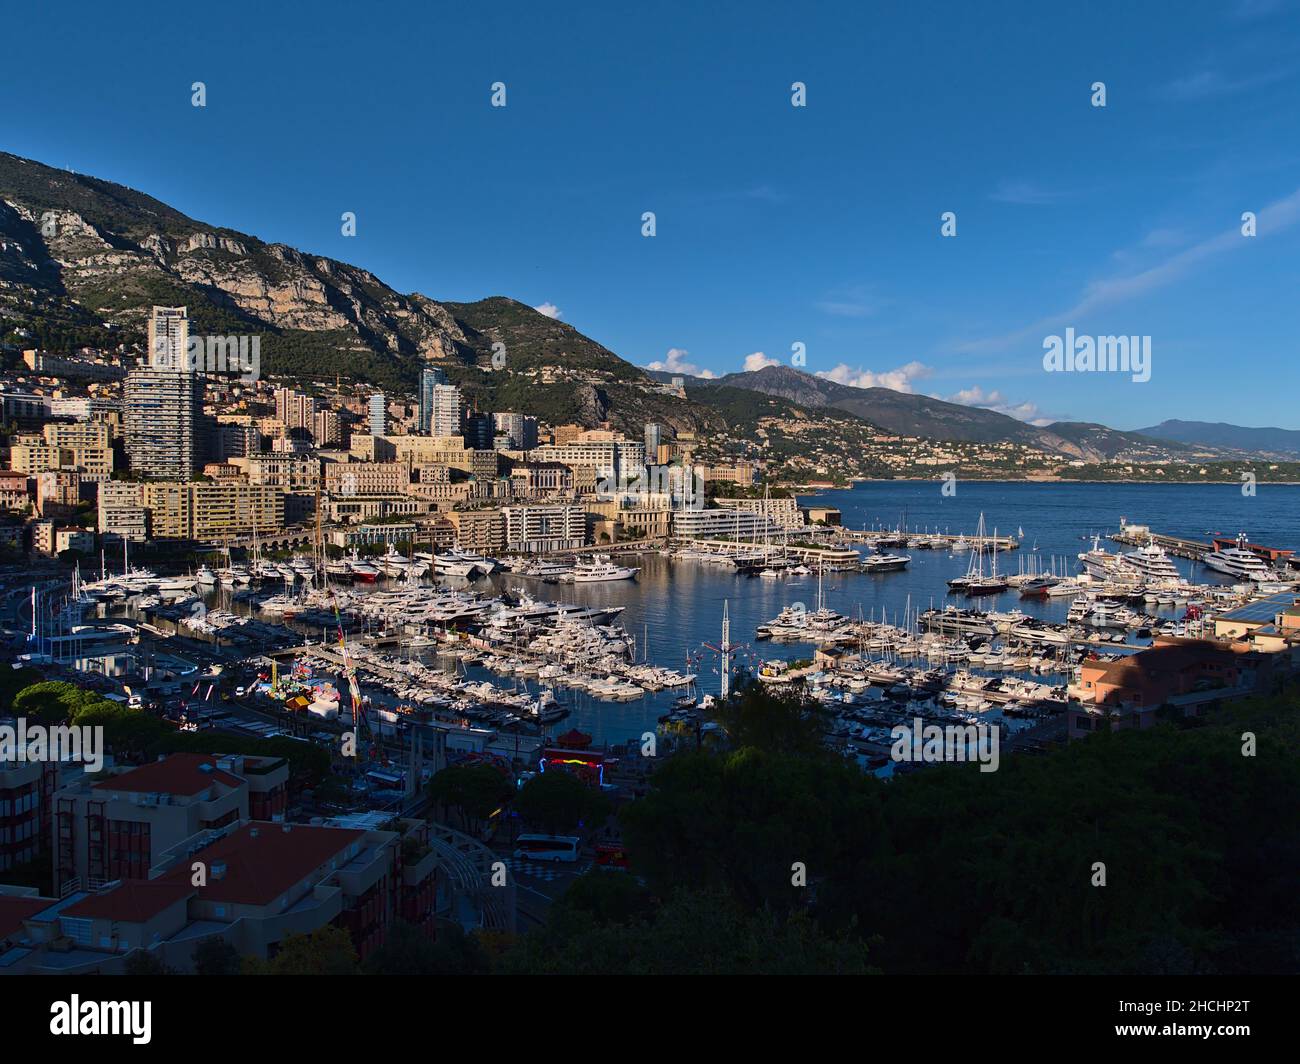 Belle vue panoramique de la Principauté de Monaco au soleil de l'après-midi avec port de plaisance Port Hercule, foire et immeubles de haute hauteur. Banque D'Images